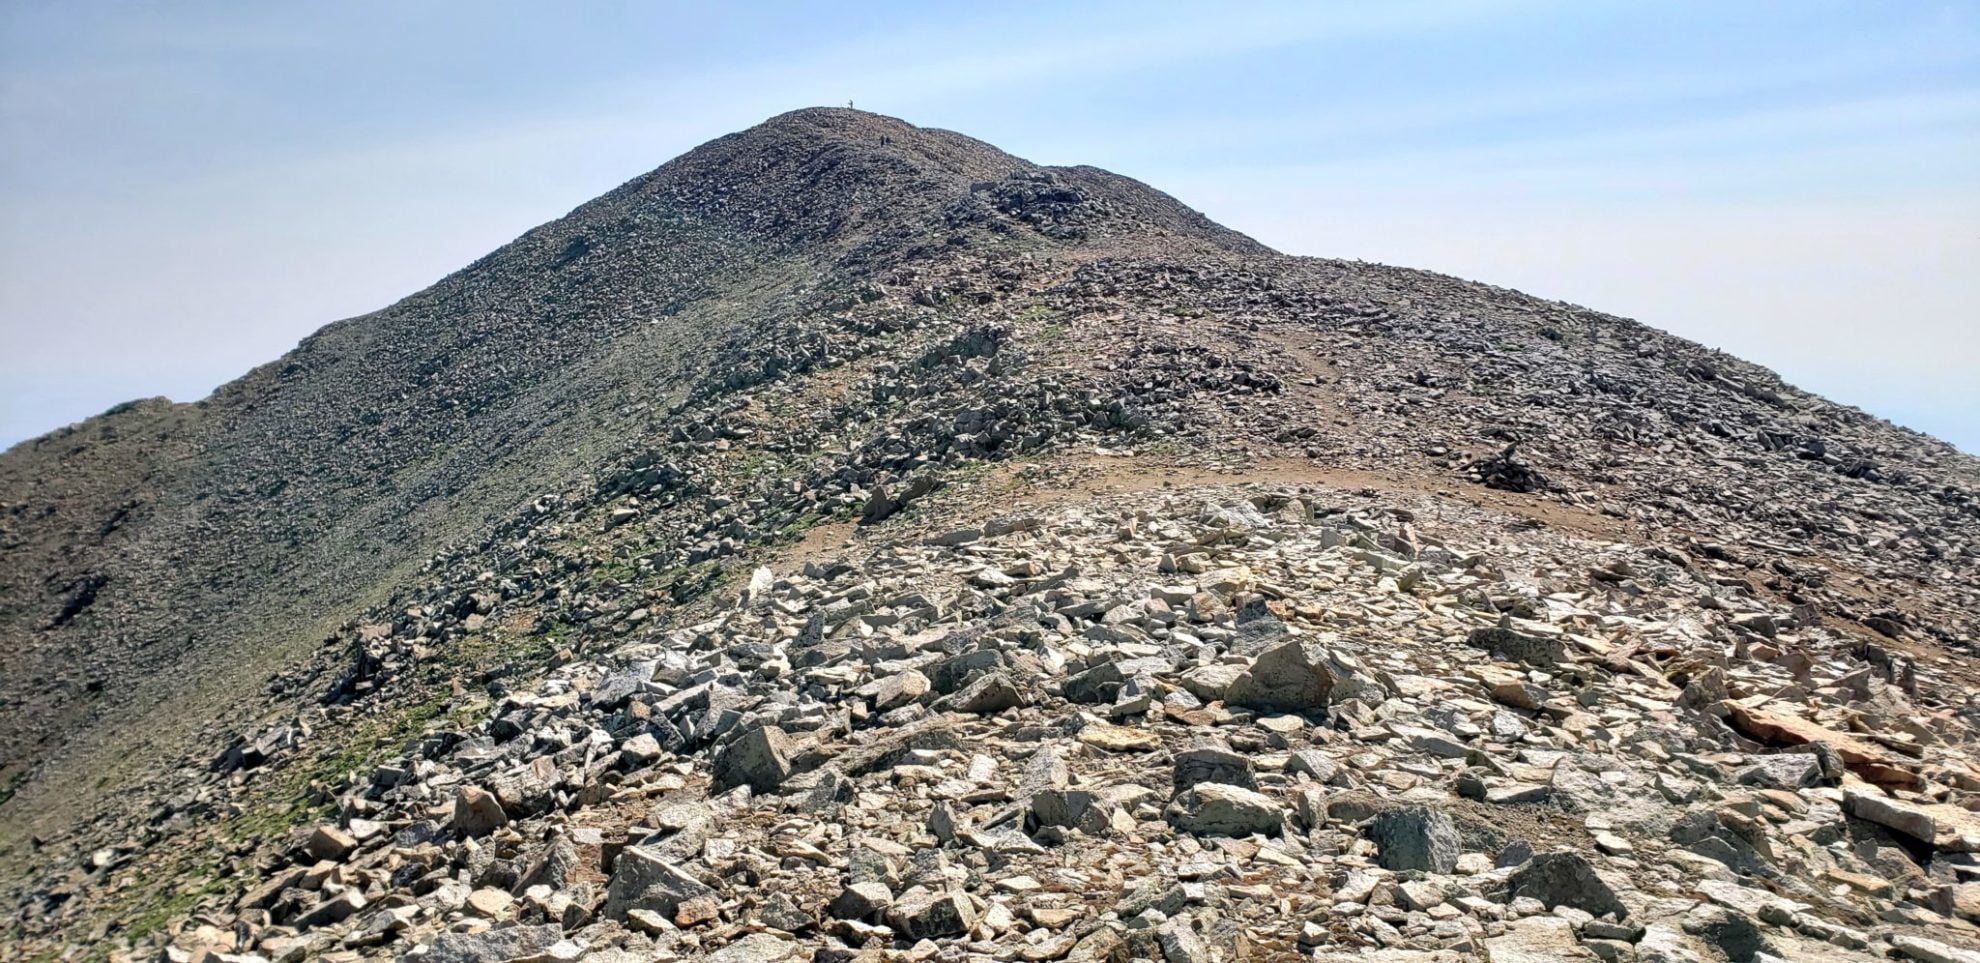 West Spanish Peak summit in the distance